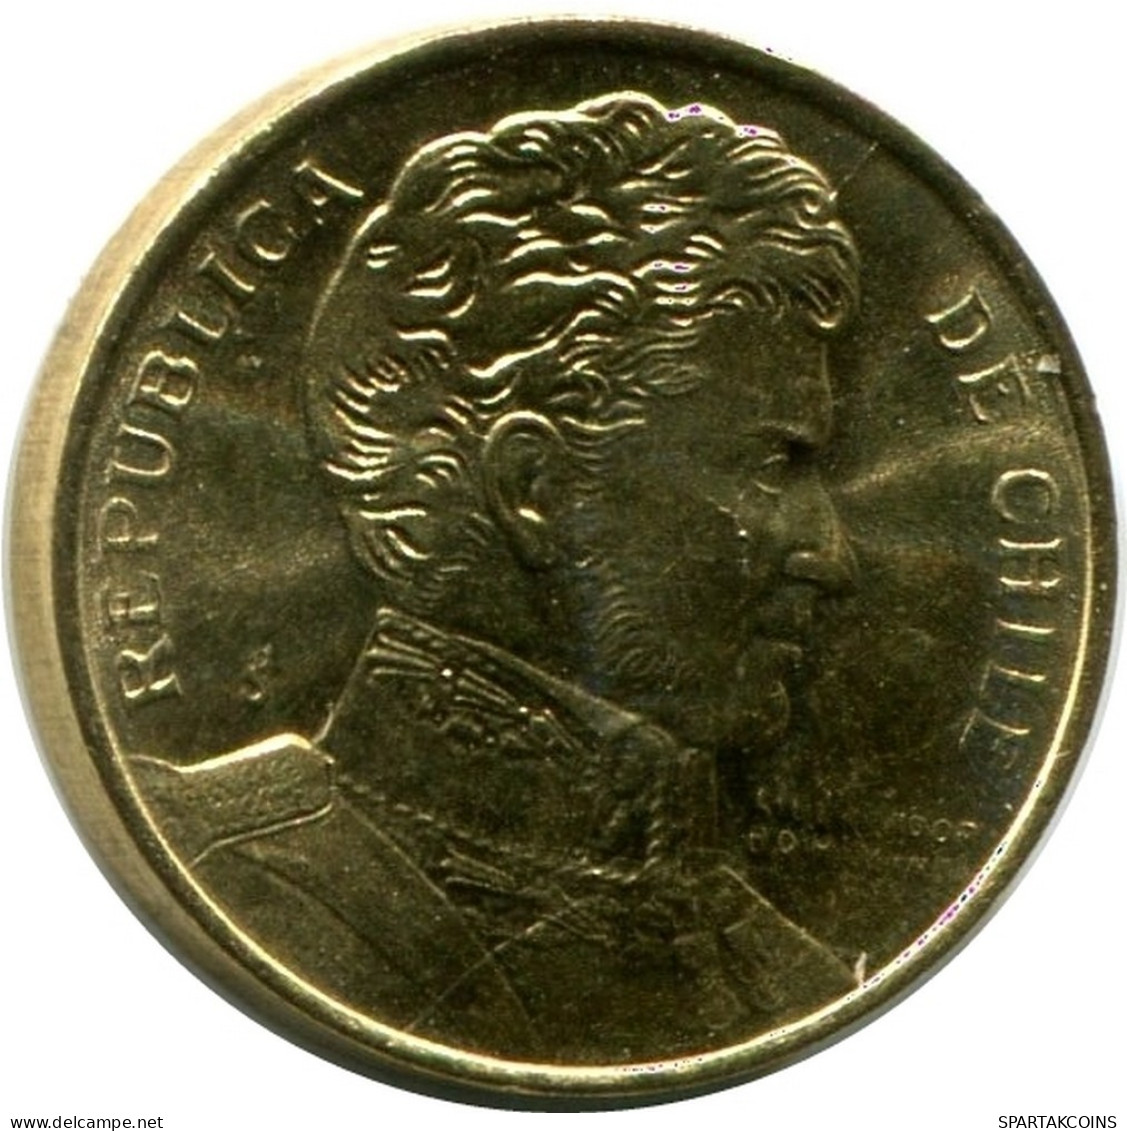 1 PESO 1990 CHILE UNC Moneda #M10146.E.A - Chili